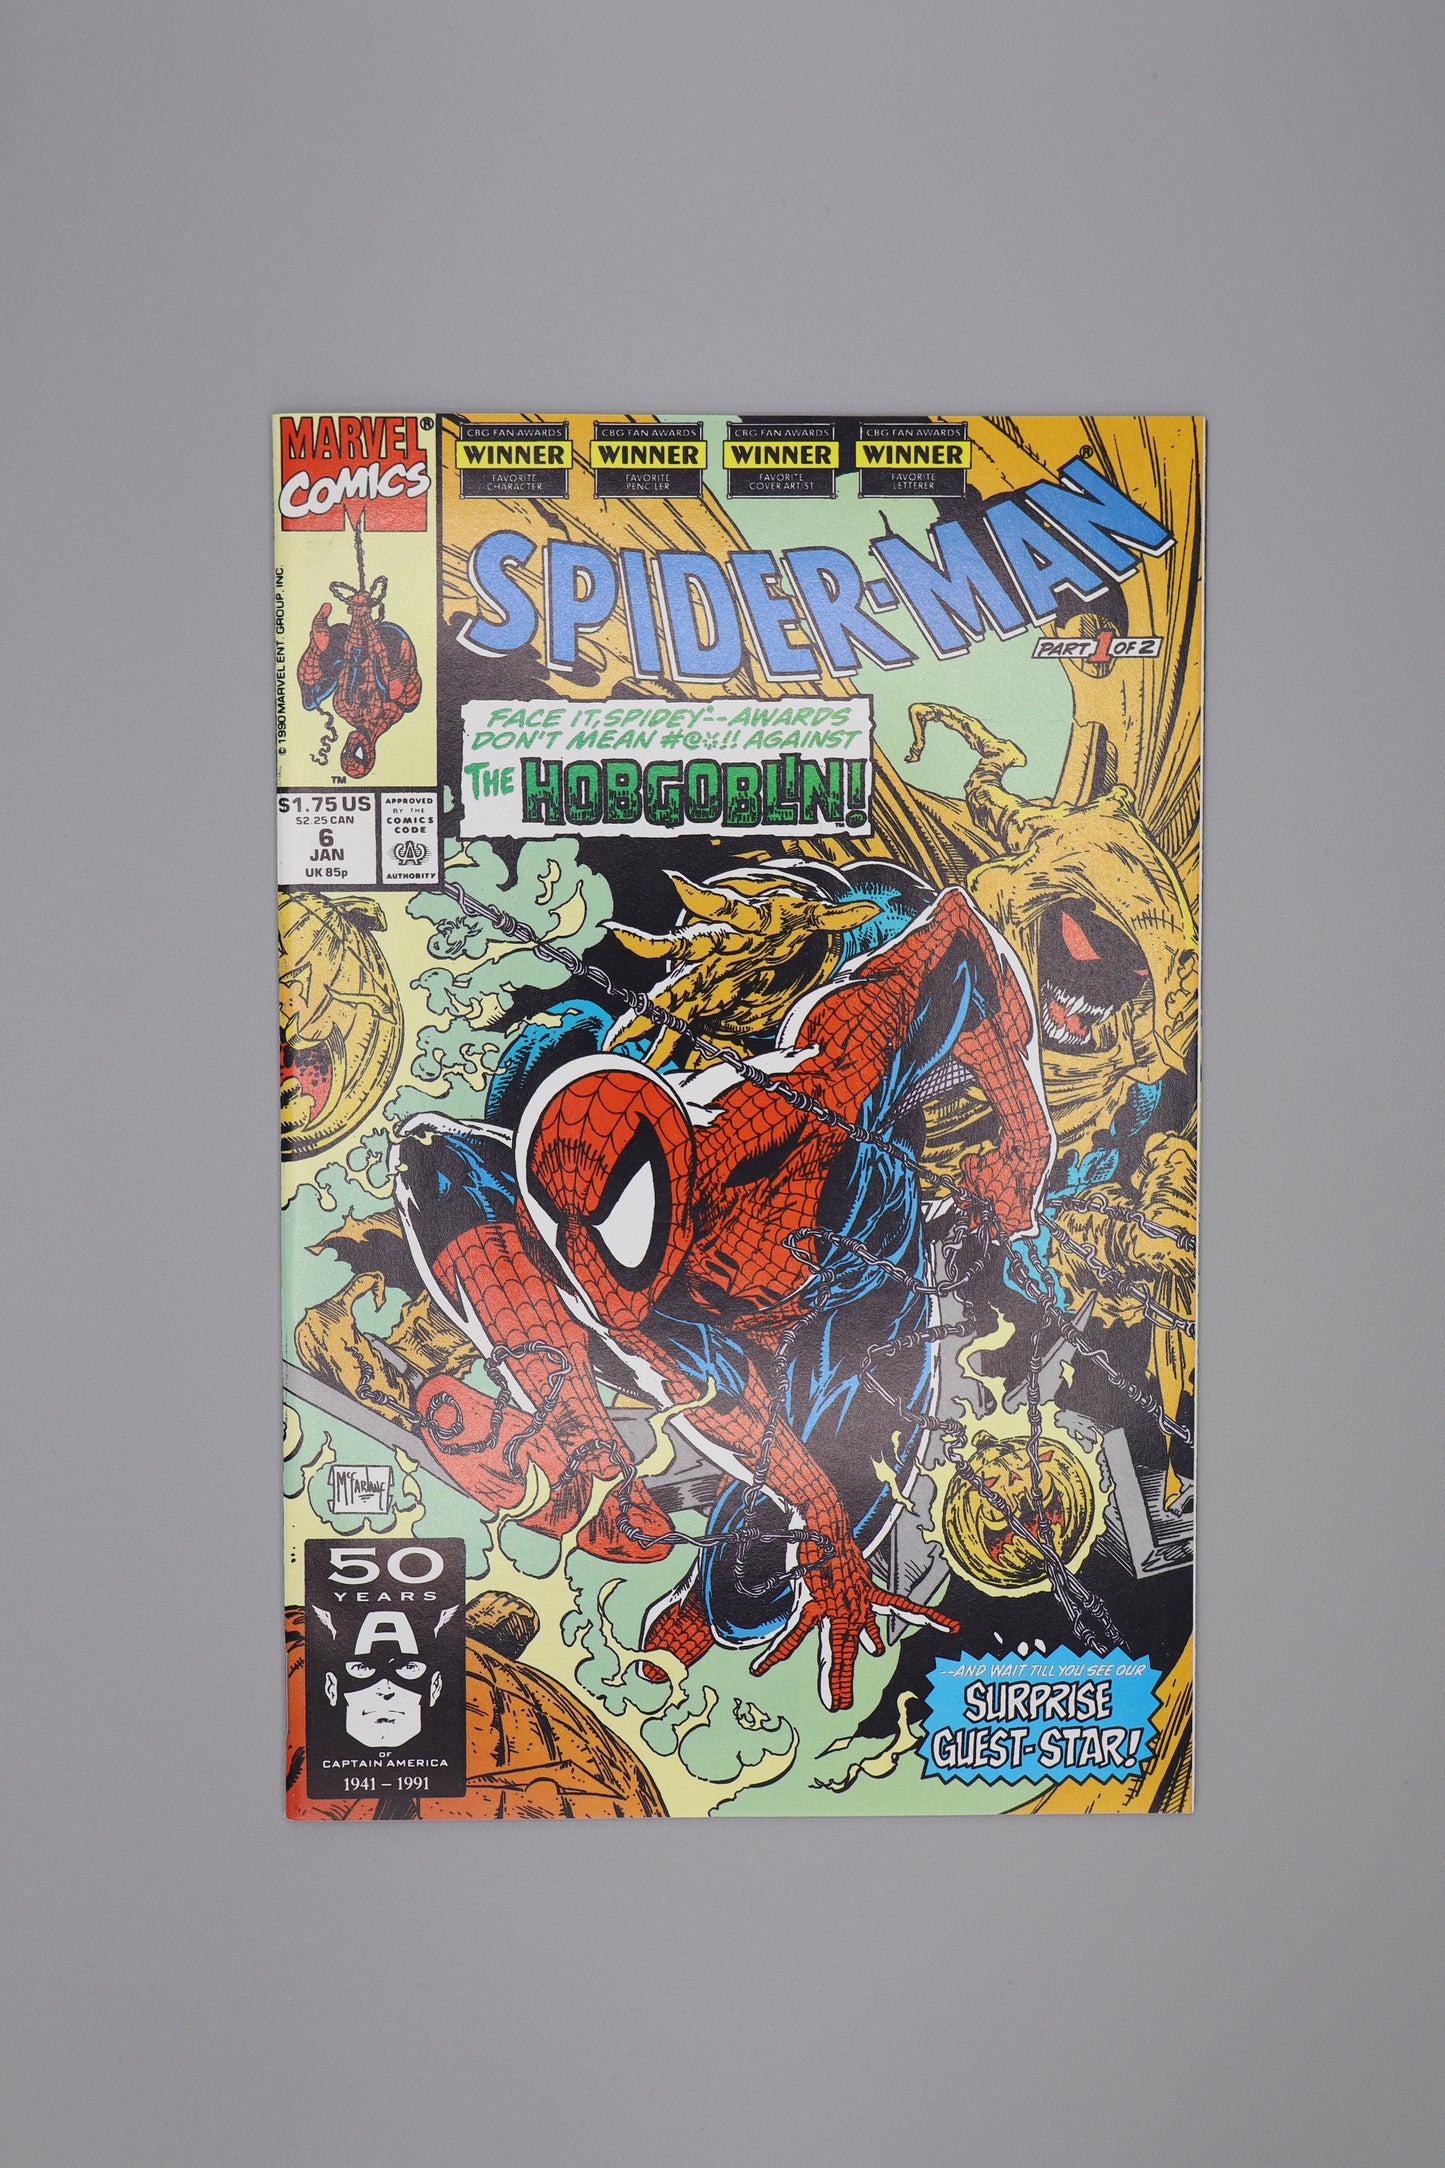 Spider-man #6